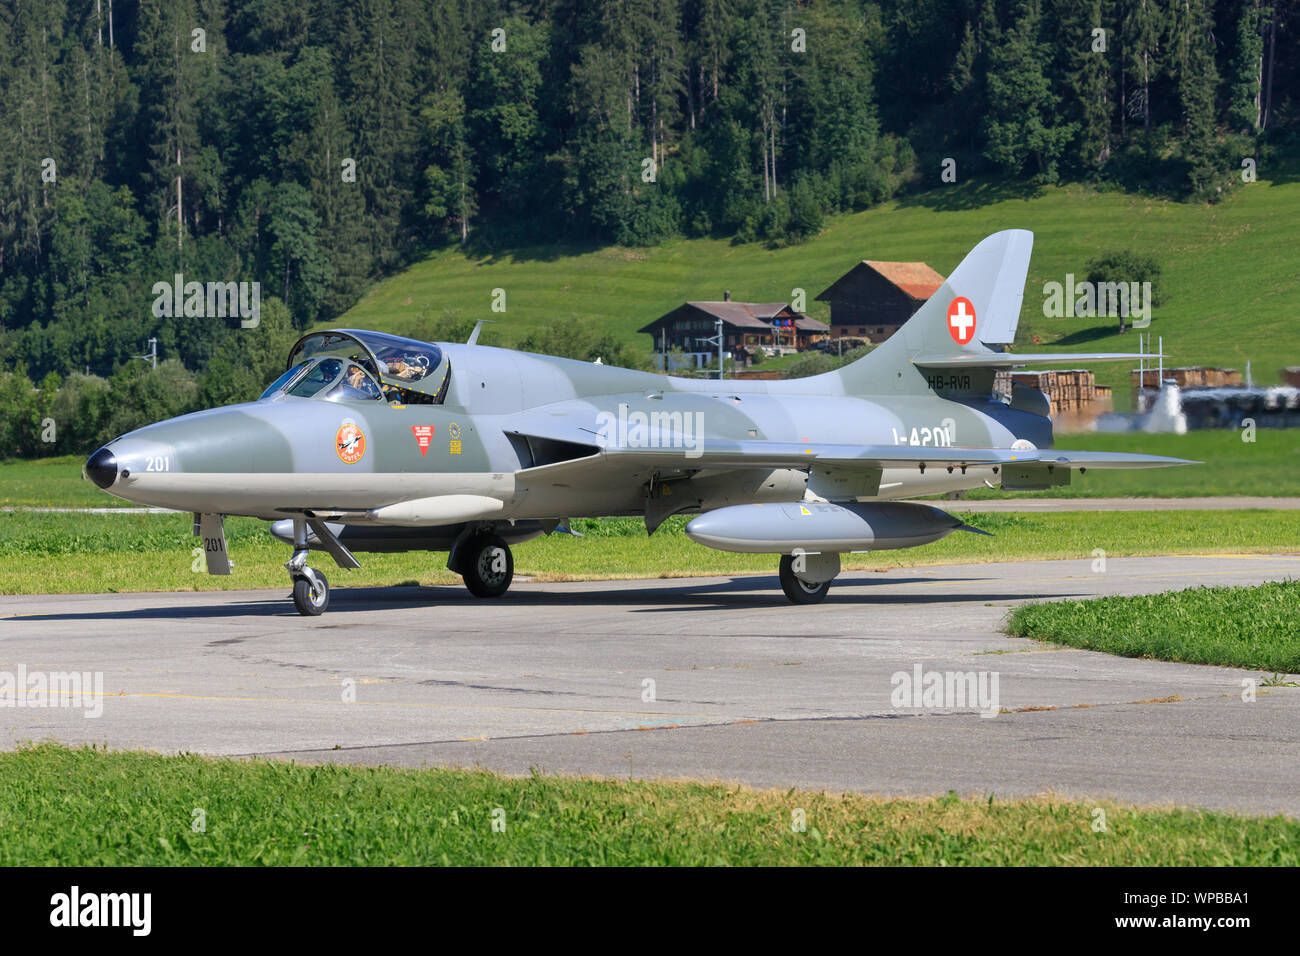 Swiss Air Force Hawker Hunter Stockfotos und -bilder Kaufen - Alamy